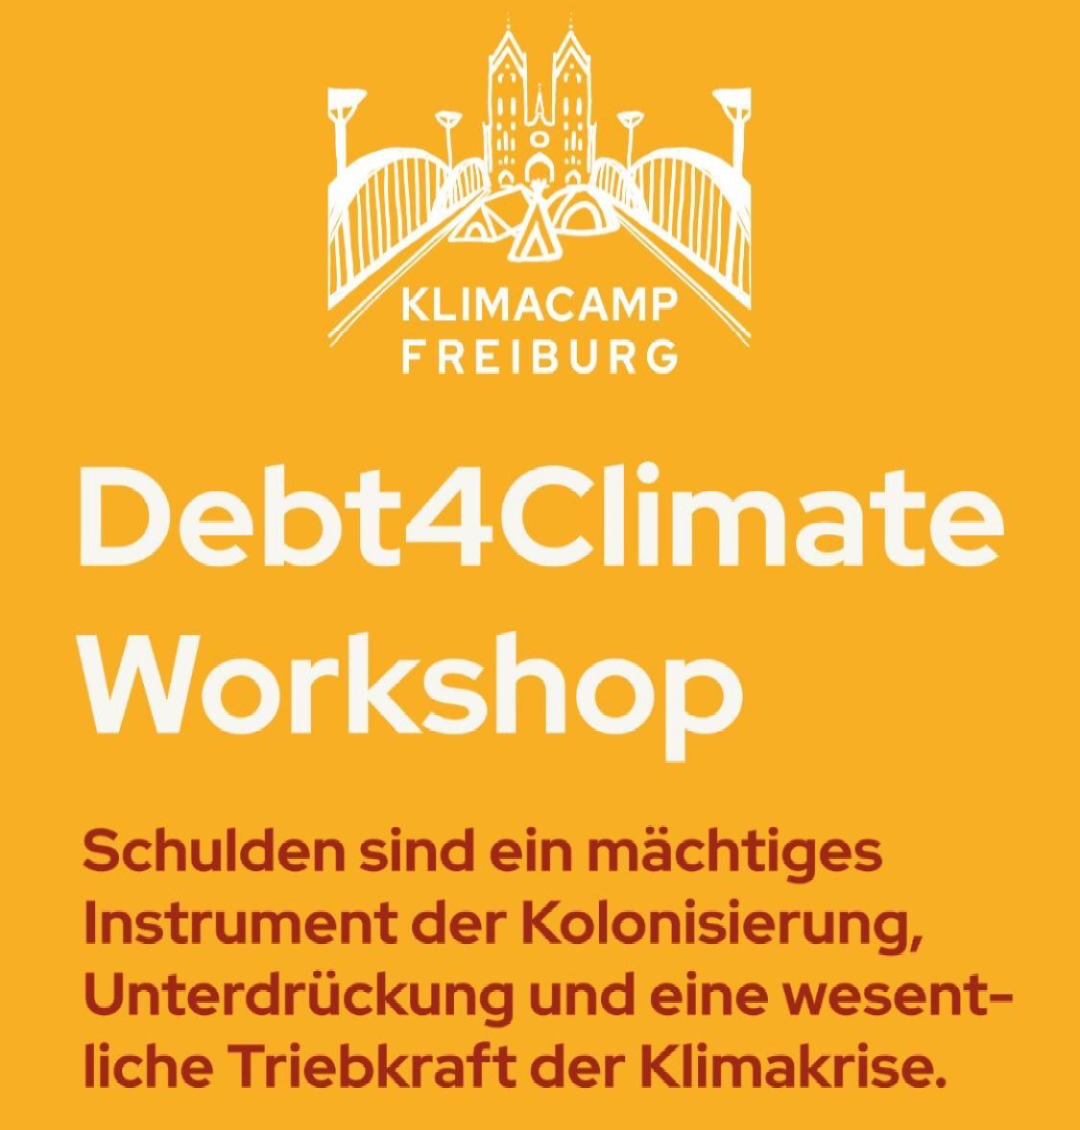 Debt4Climate Workshop